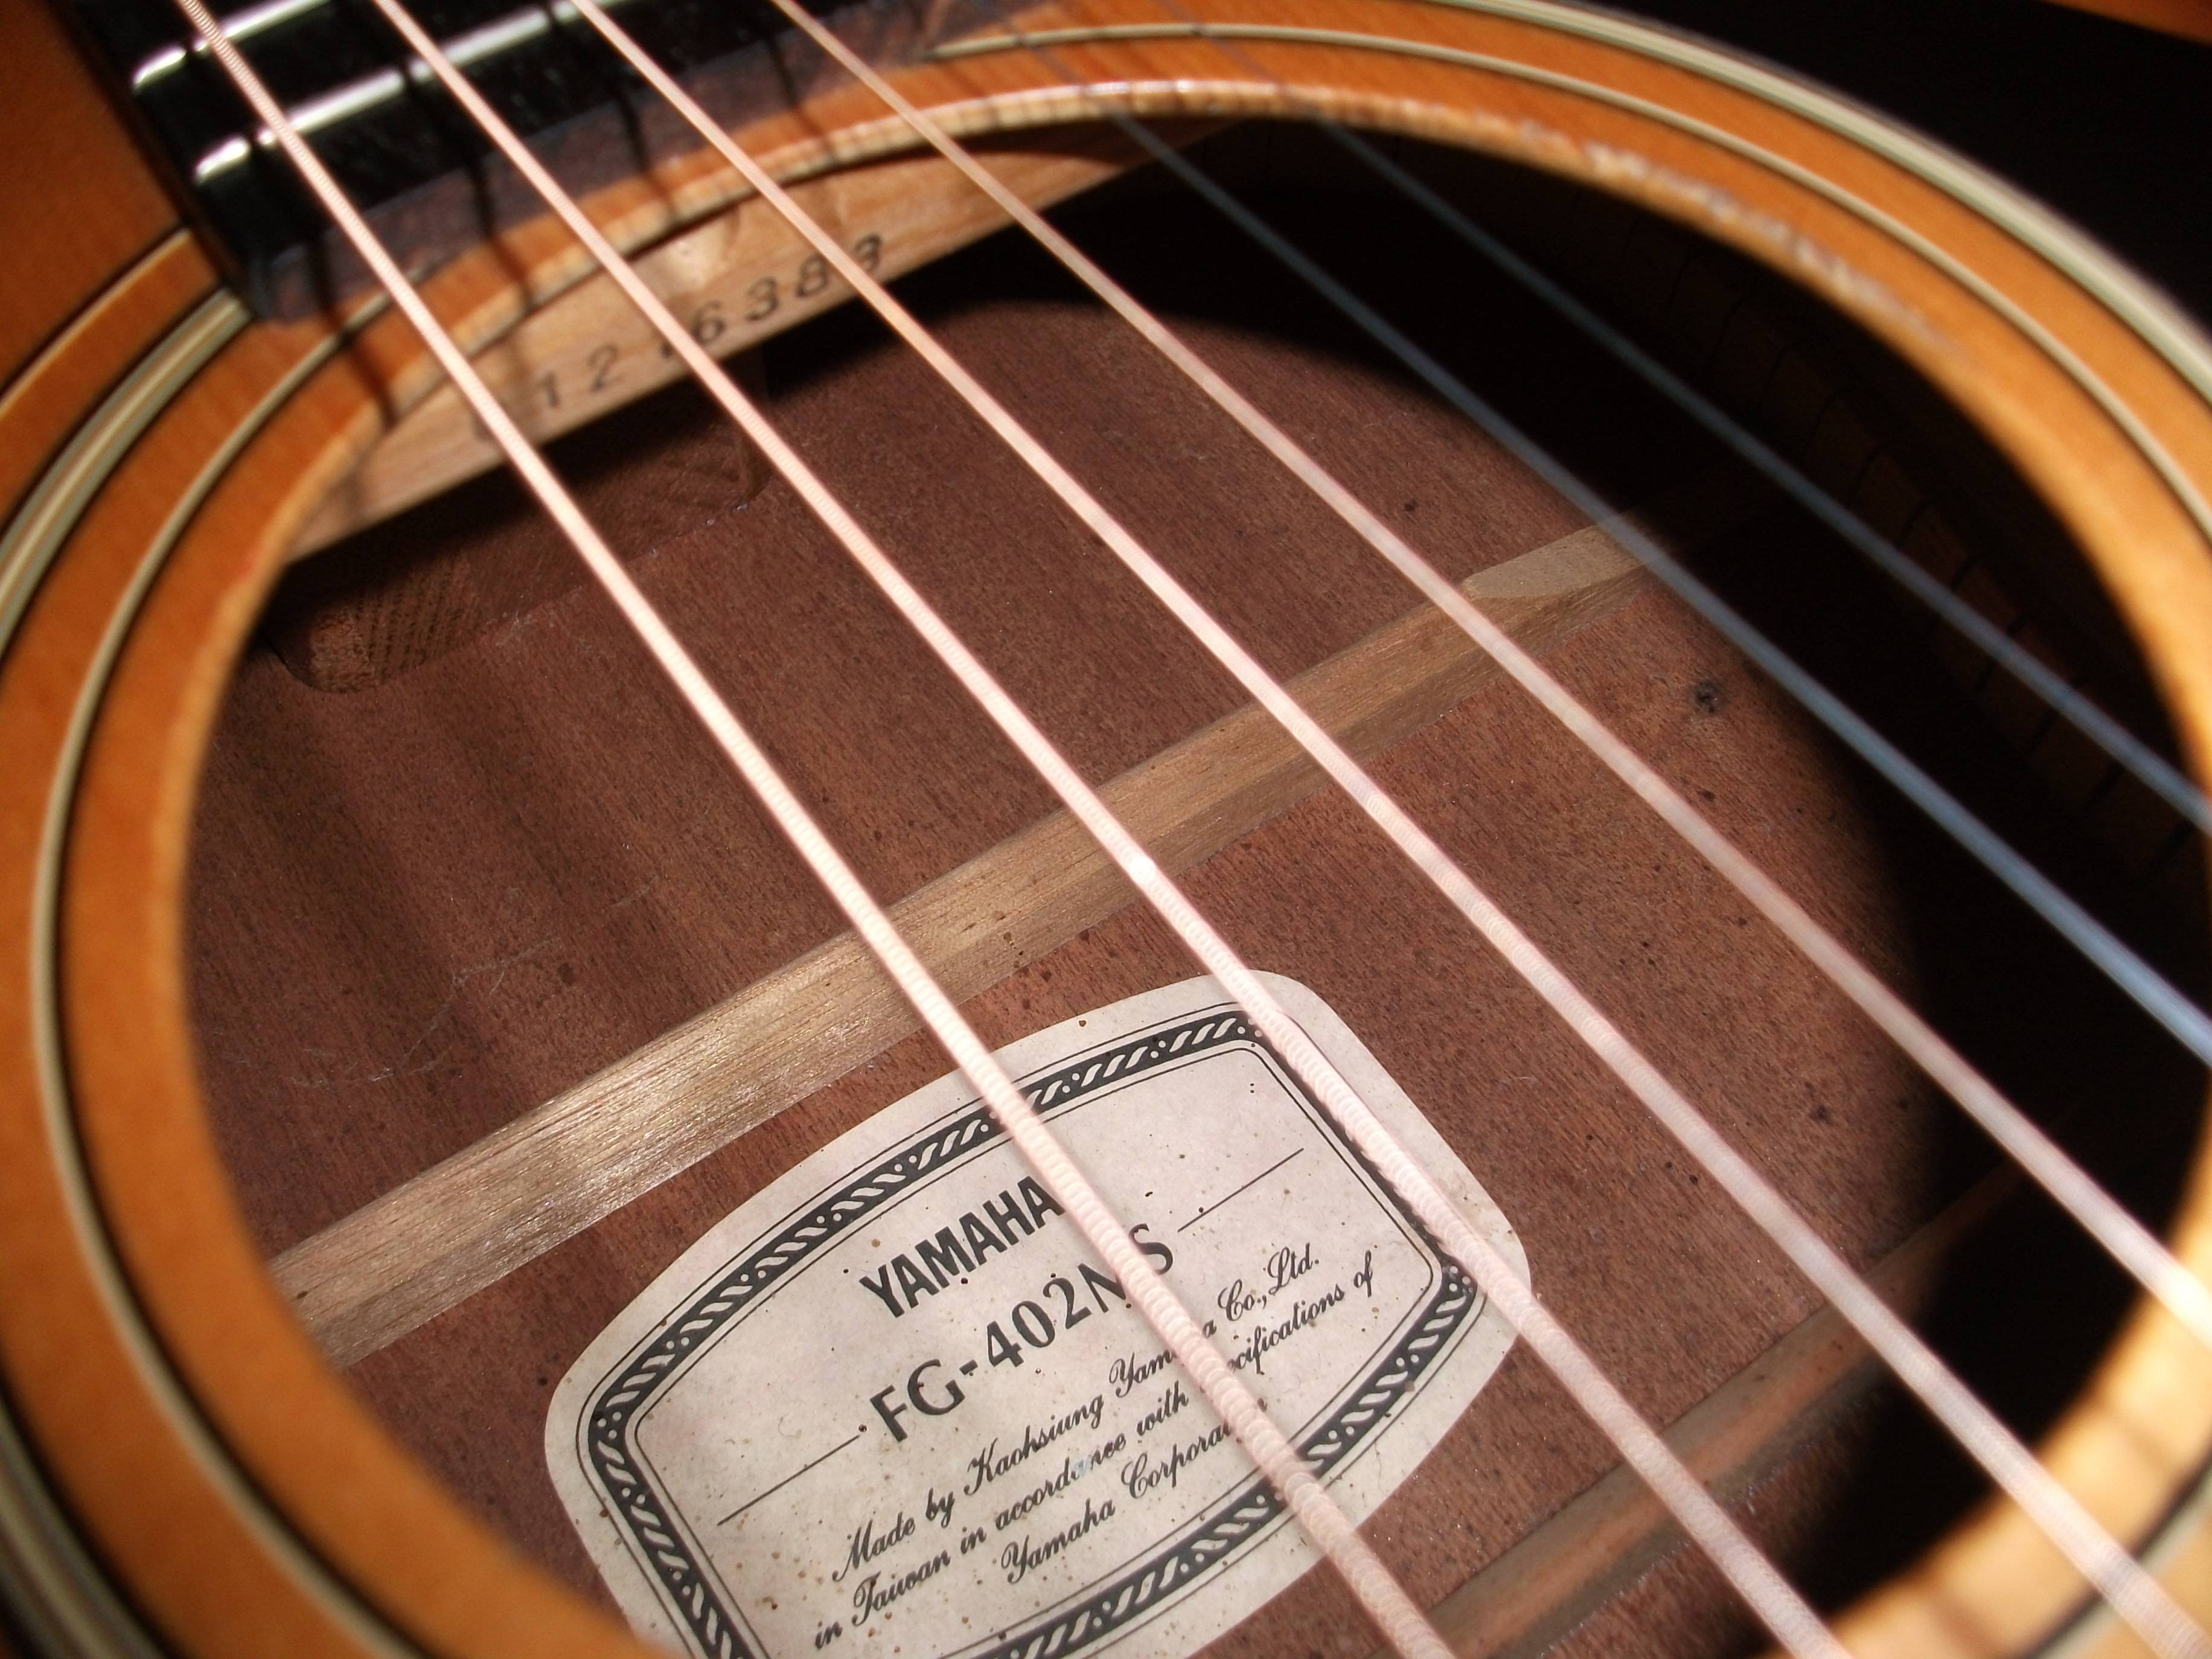 galanti guitar serial number